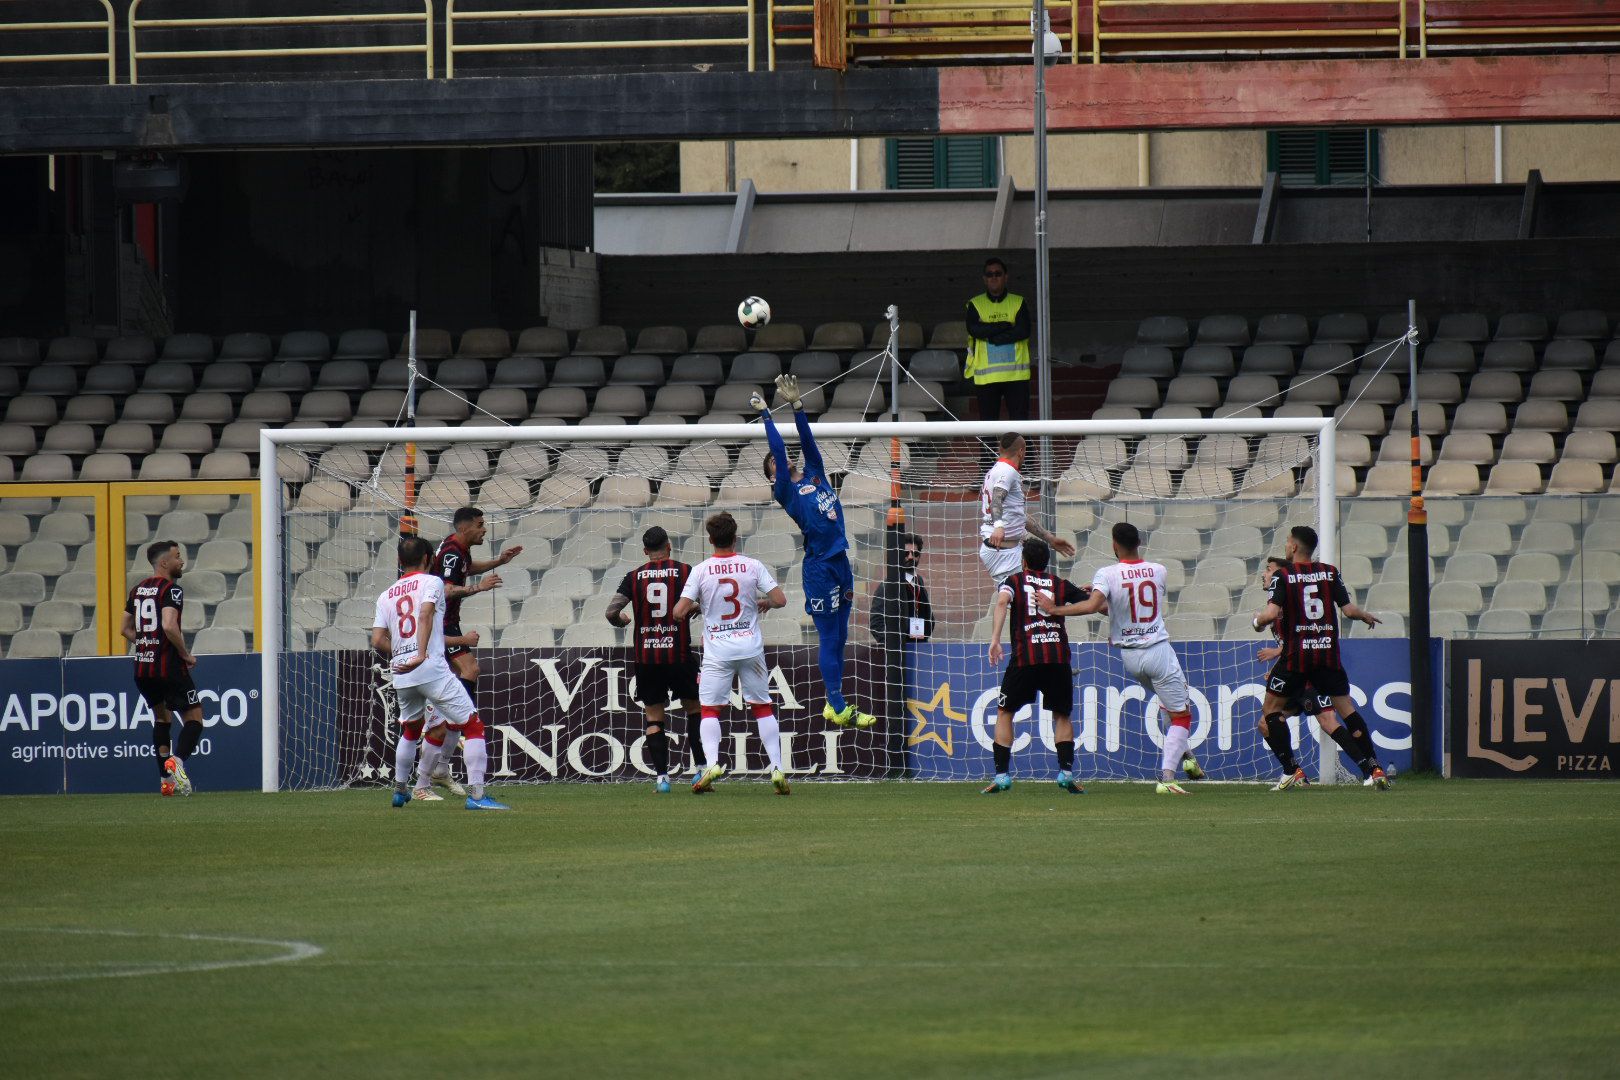 Buona la prima. Il Foggia batte la Turris (2-0) è prenota la sfida di Avellino.